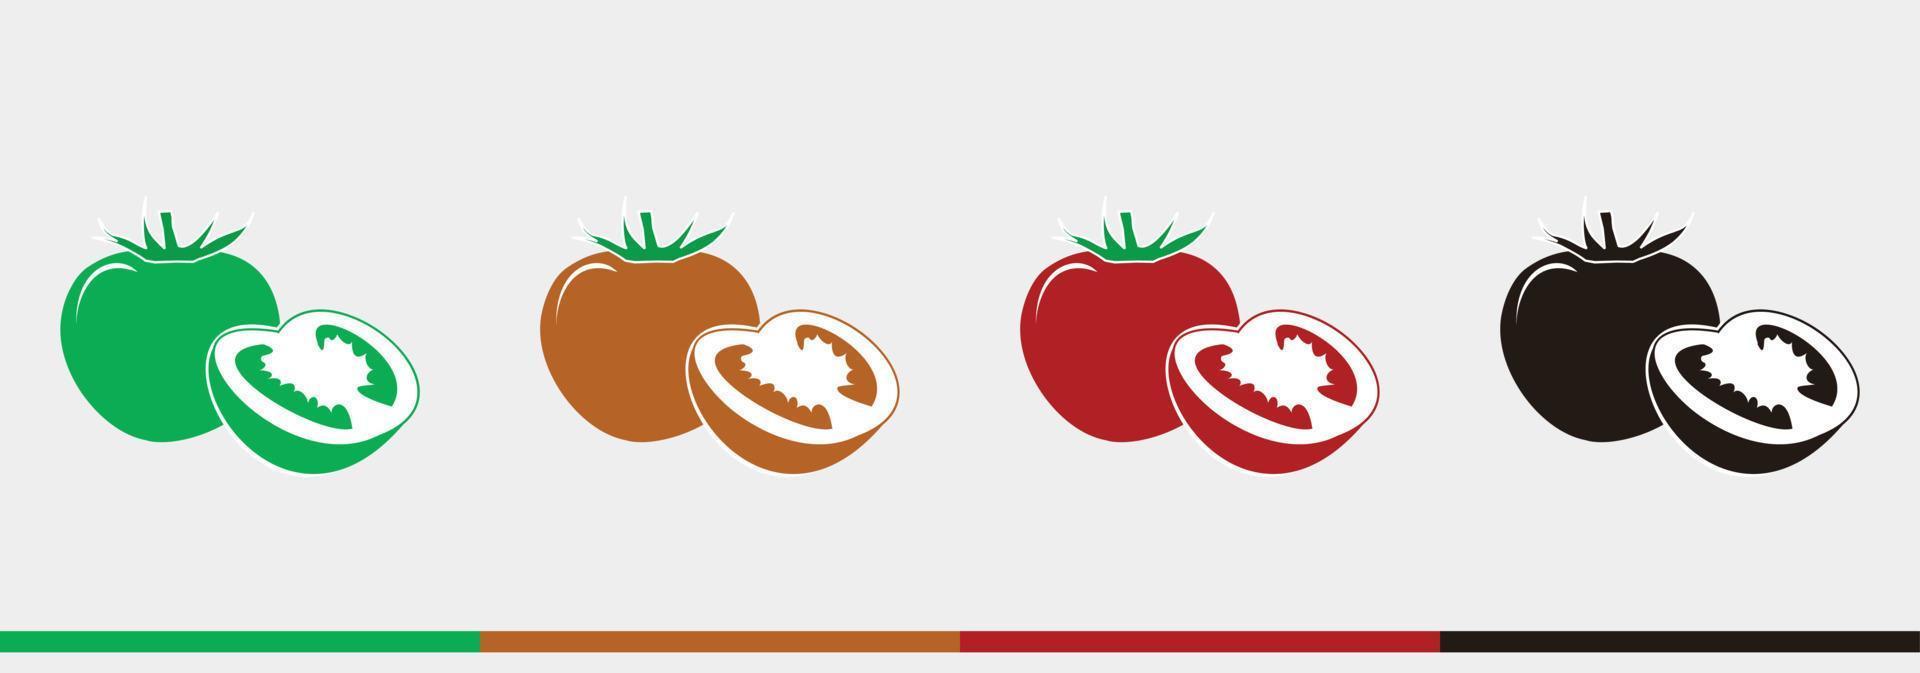 conjunto de colores de tomates - ilustraciones vectoriales dibujadas a mano para el logotipo de dibujos animados de alimentos - aislado en fondo blanco vector